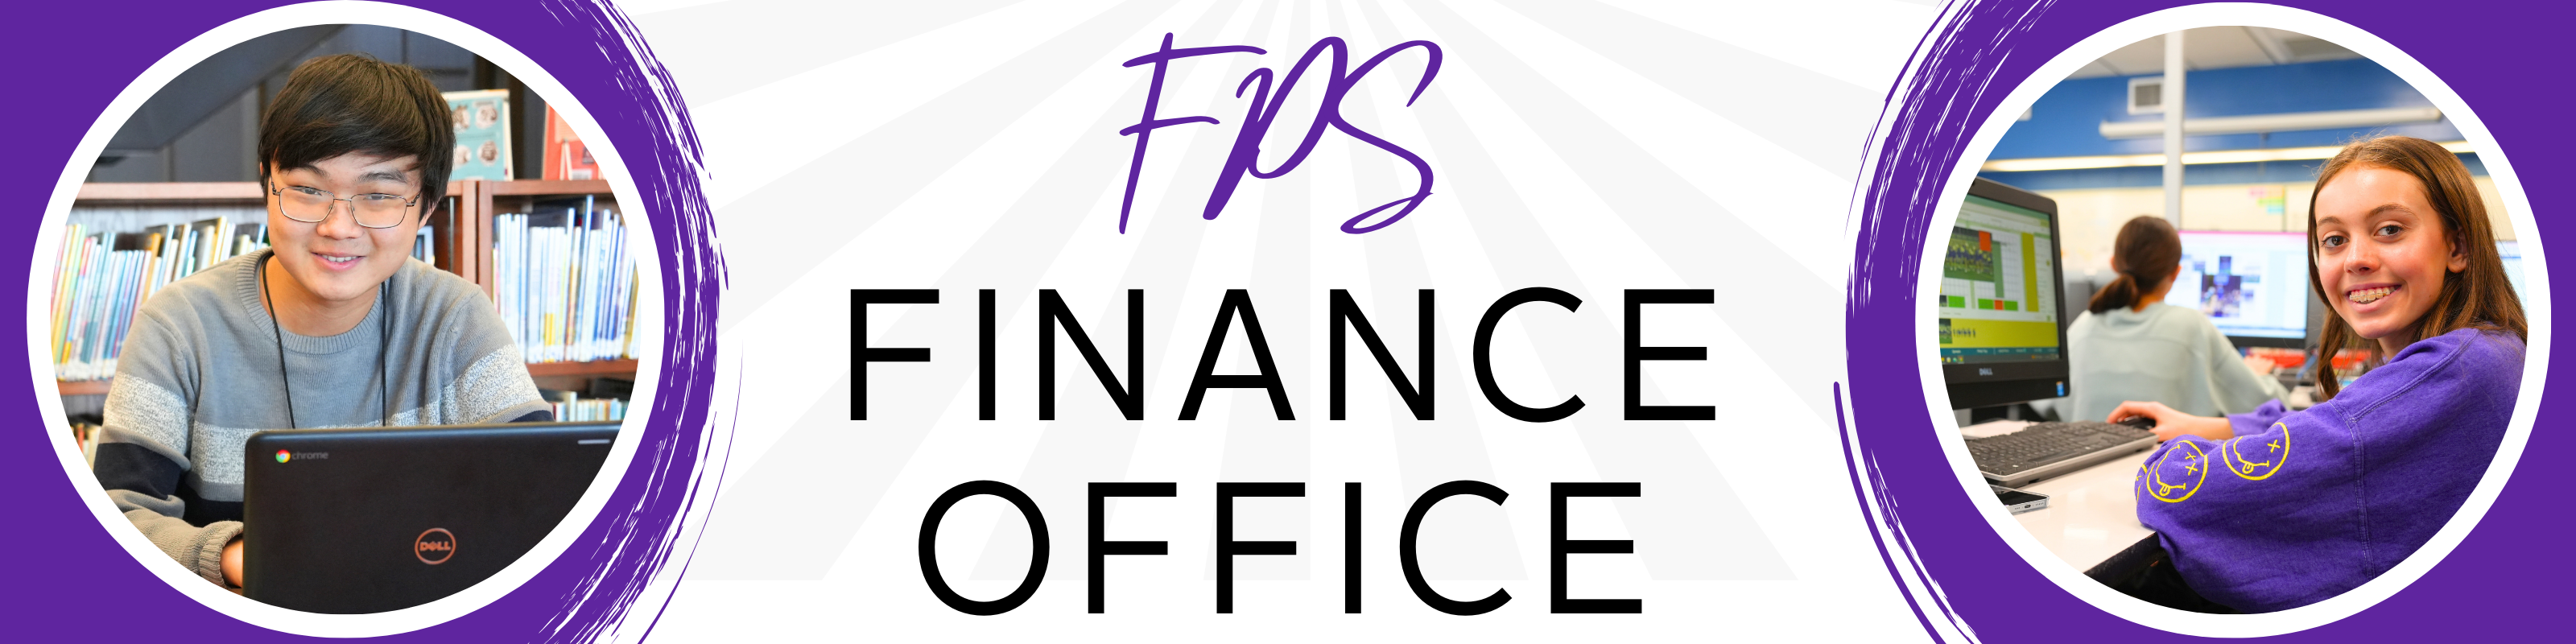 FPS Finance Office